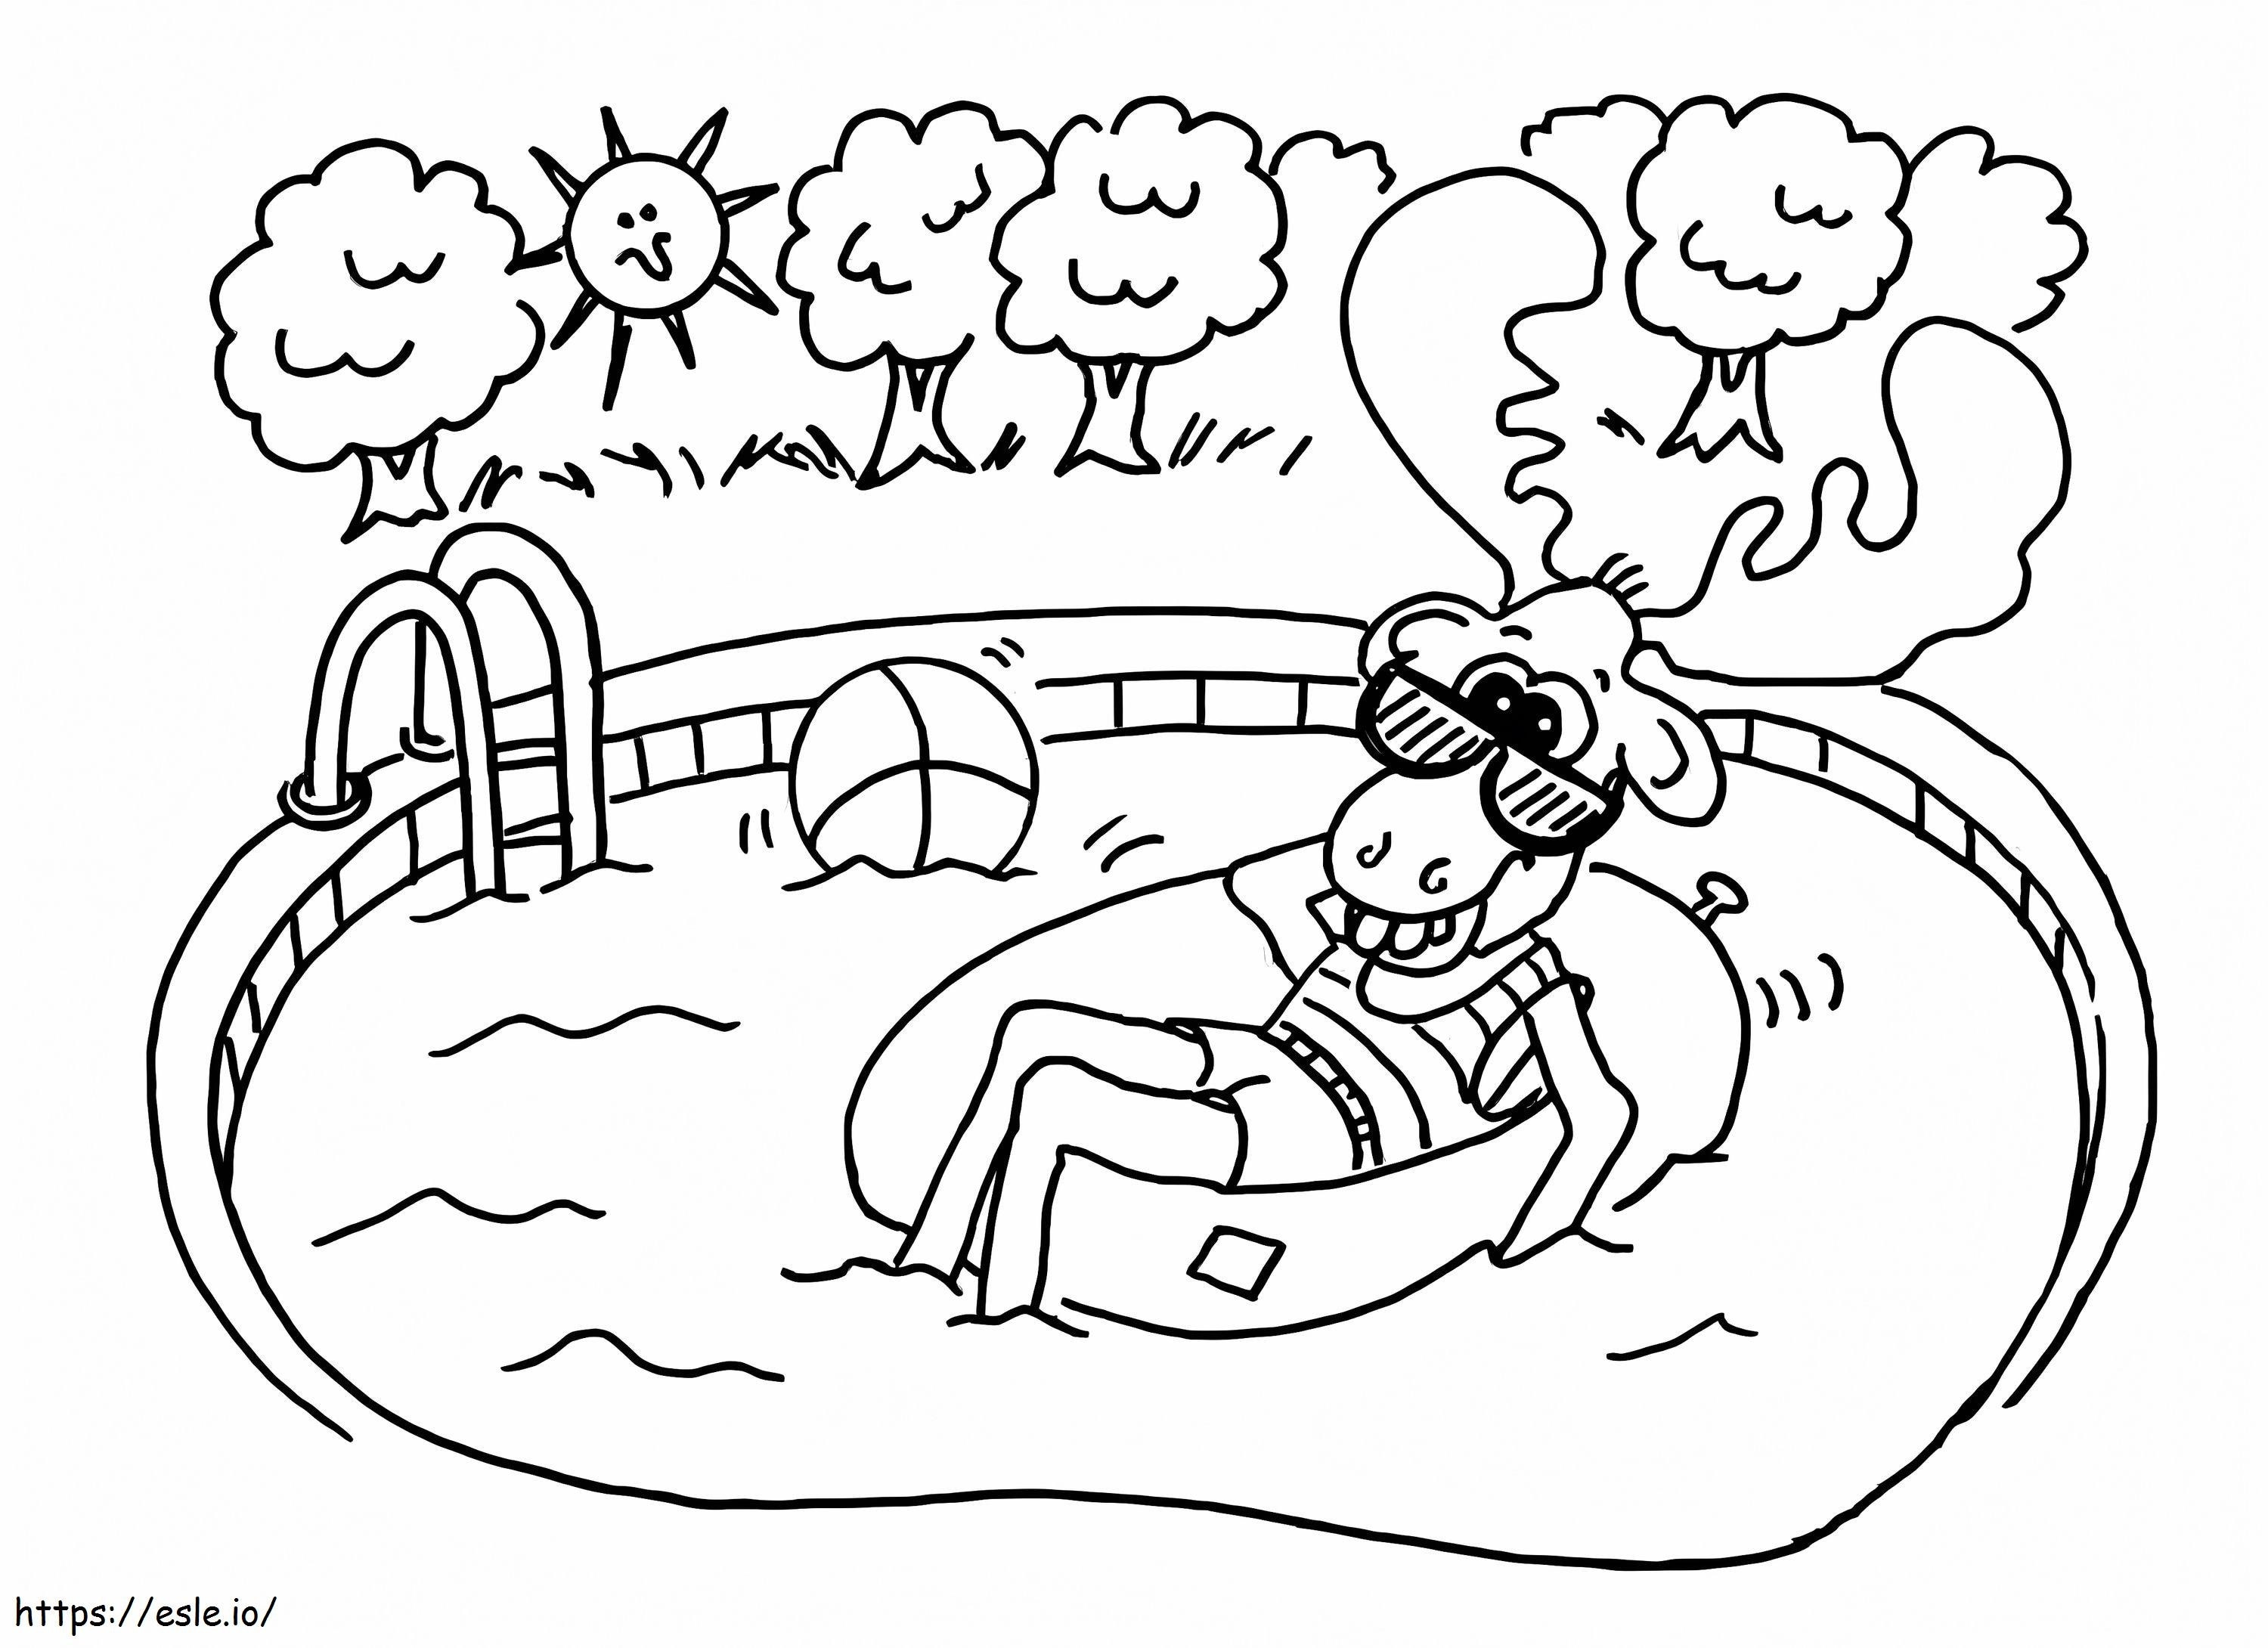 Hirsch im Pool ausmalbilder